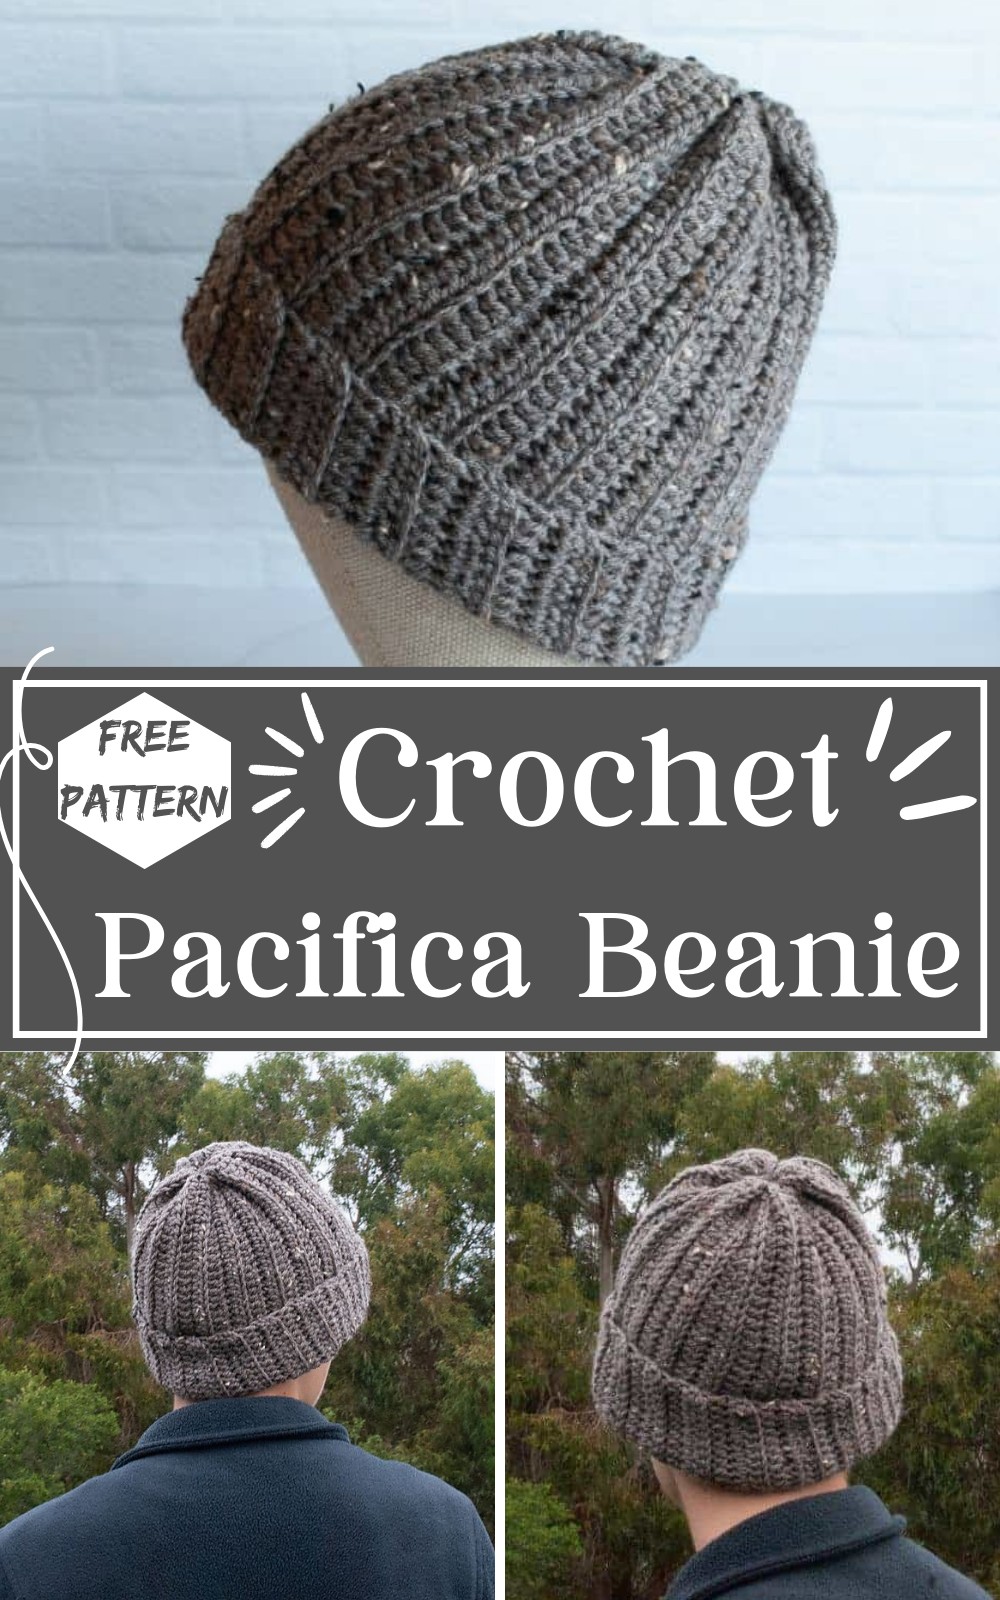 Crochet Pacifica Beanie